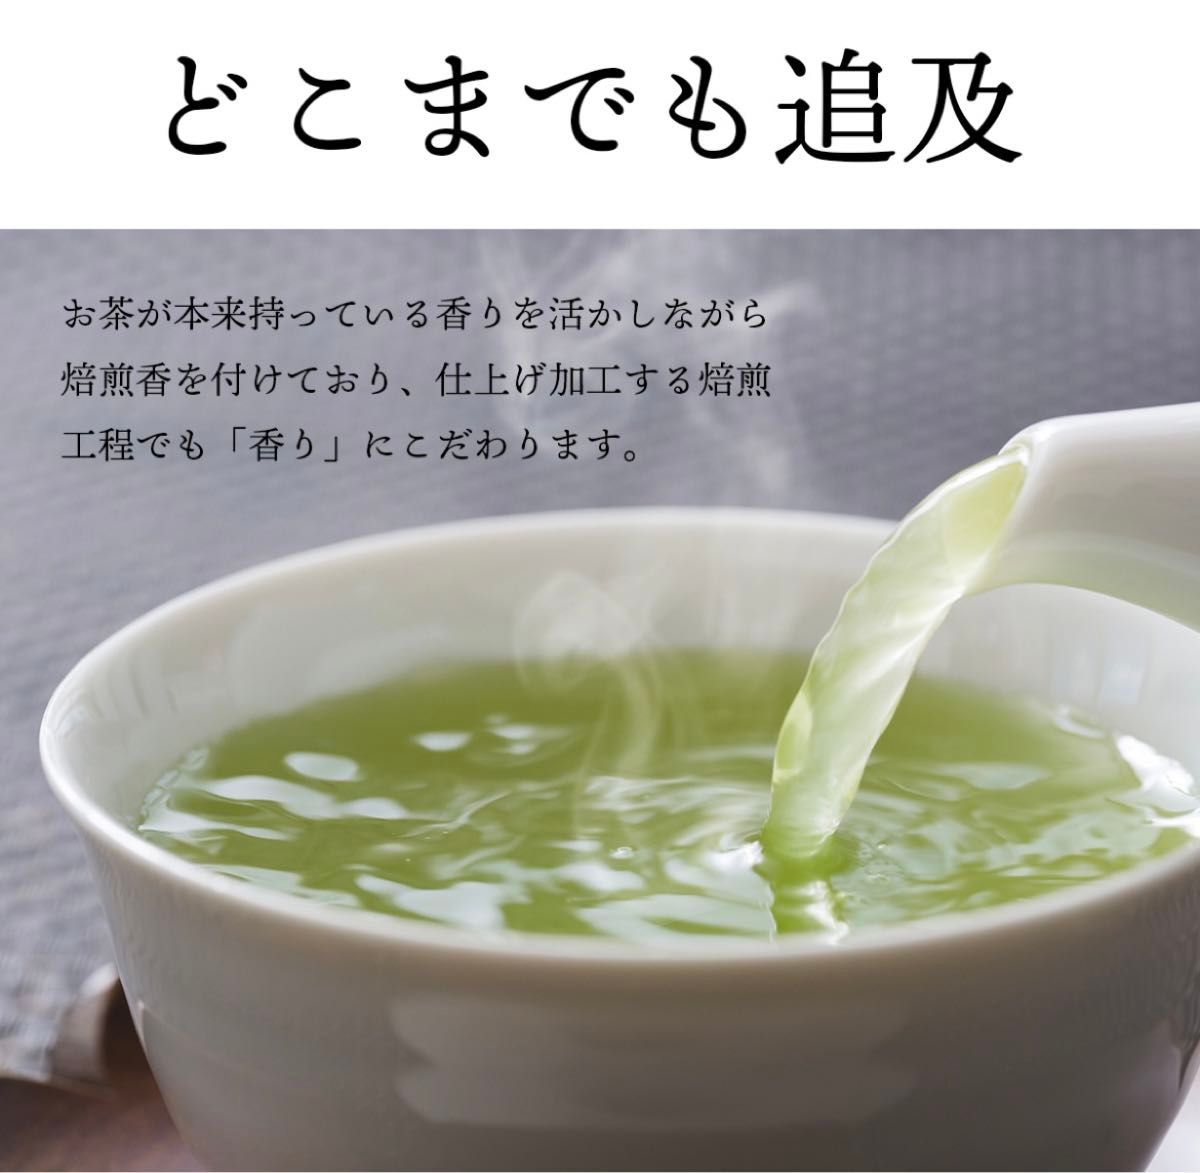 【極上知覧茶】(緑茶)ティーバッグ 2.5g×5包。